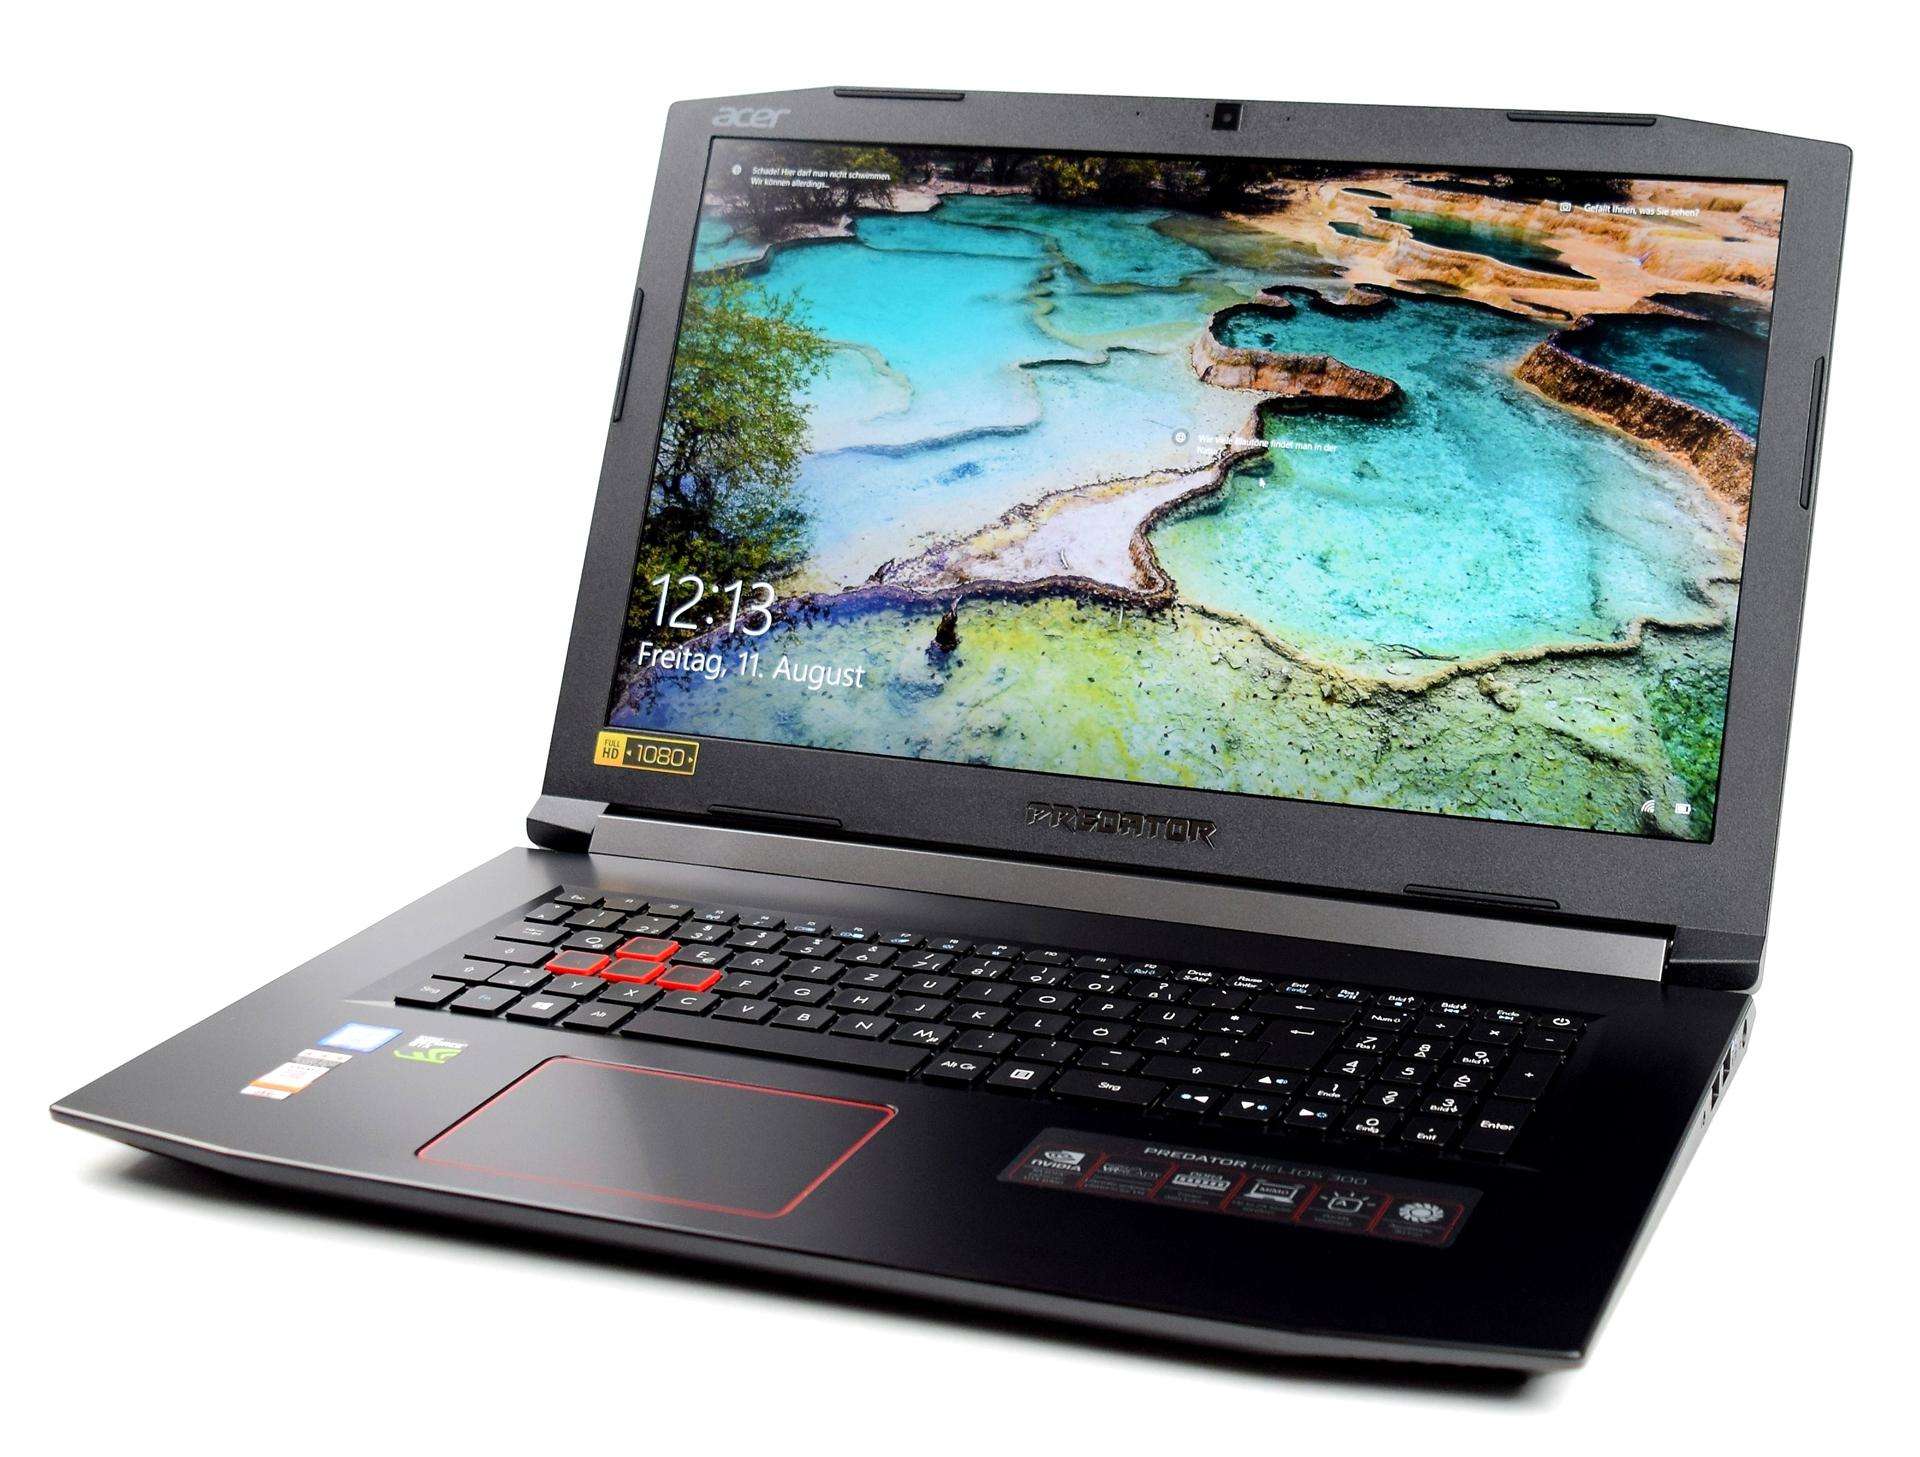 फ्लिपकार्ट Acer के इस लैपटाॅप पर भारी छूट दे रही है, जिसमें ये खास आॅफर होगें